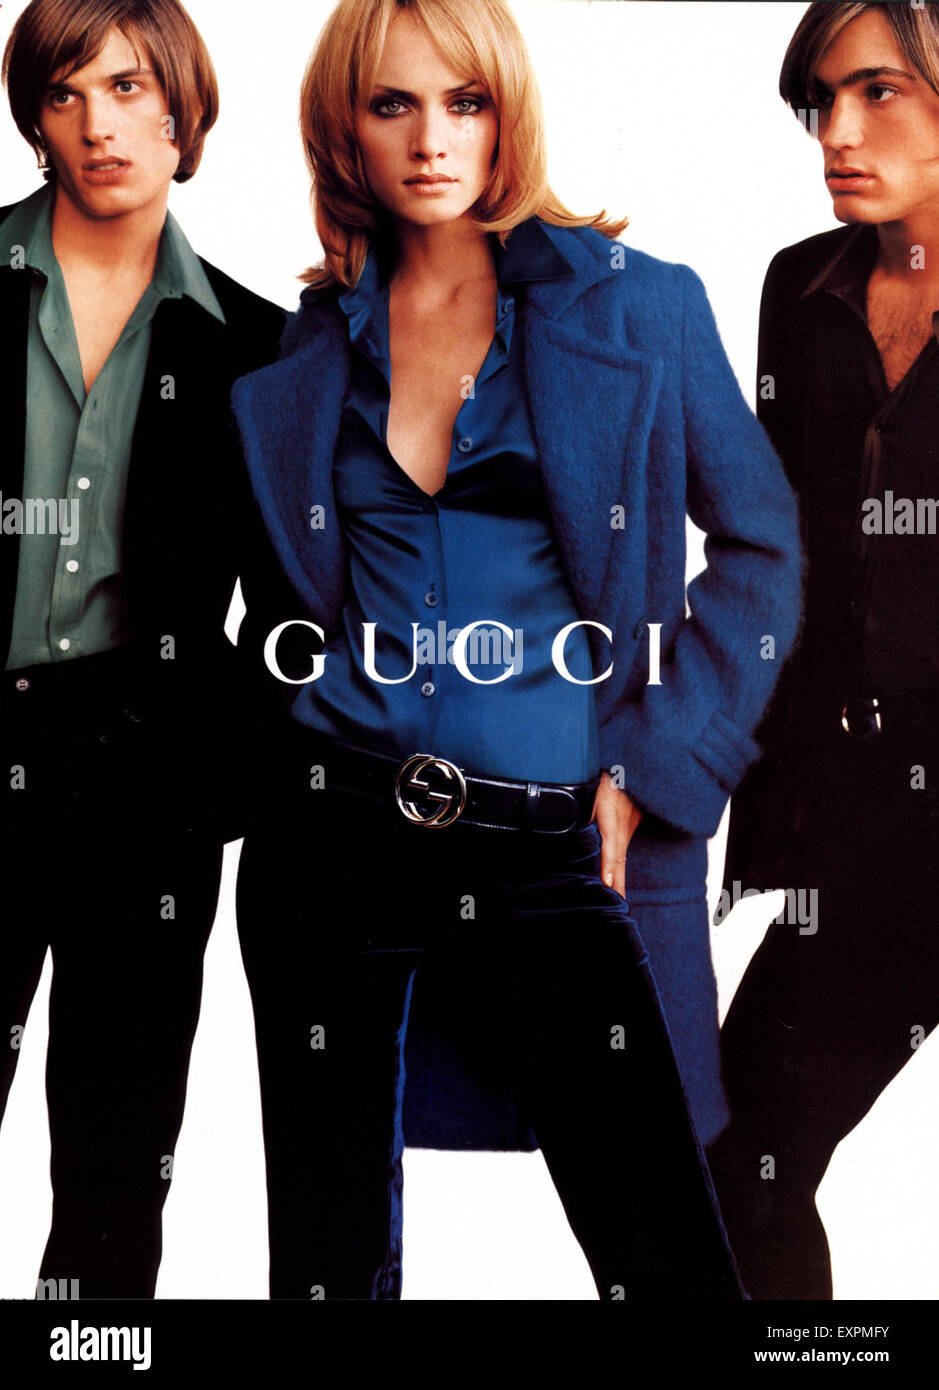 1990s UK Gucci Magazine Advert Stock Photo - Alamy